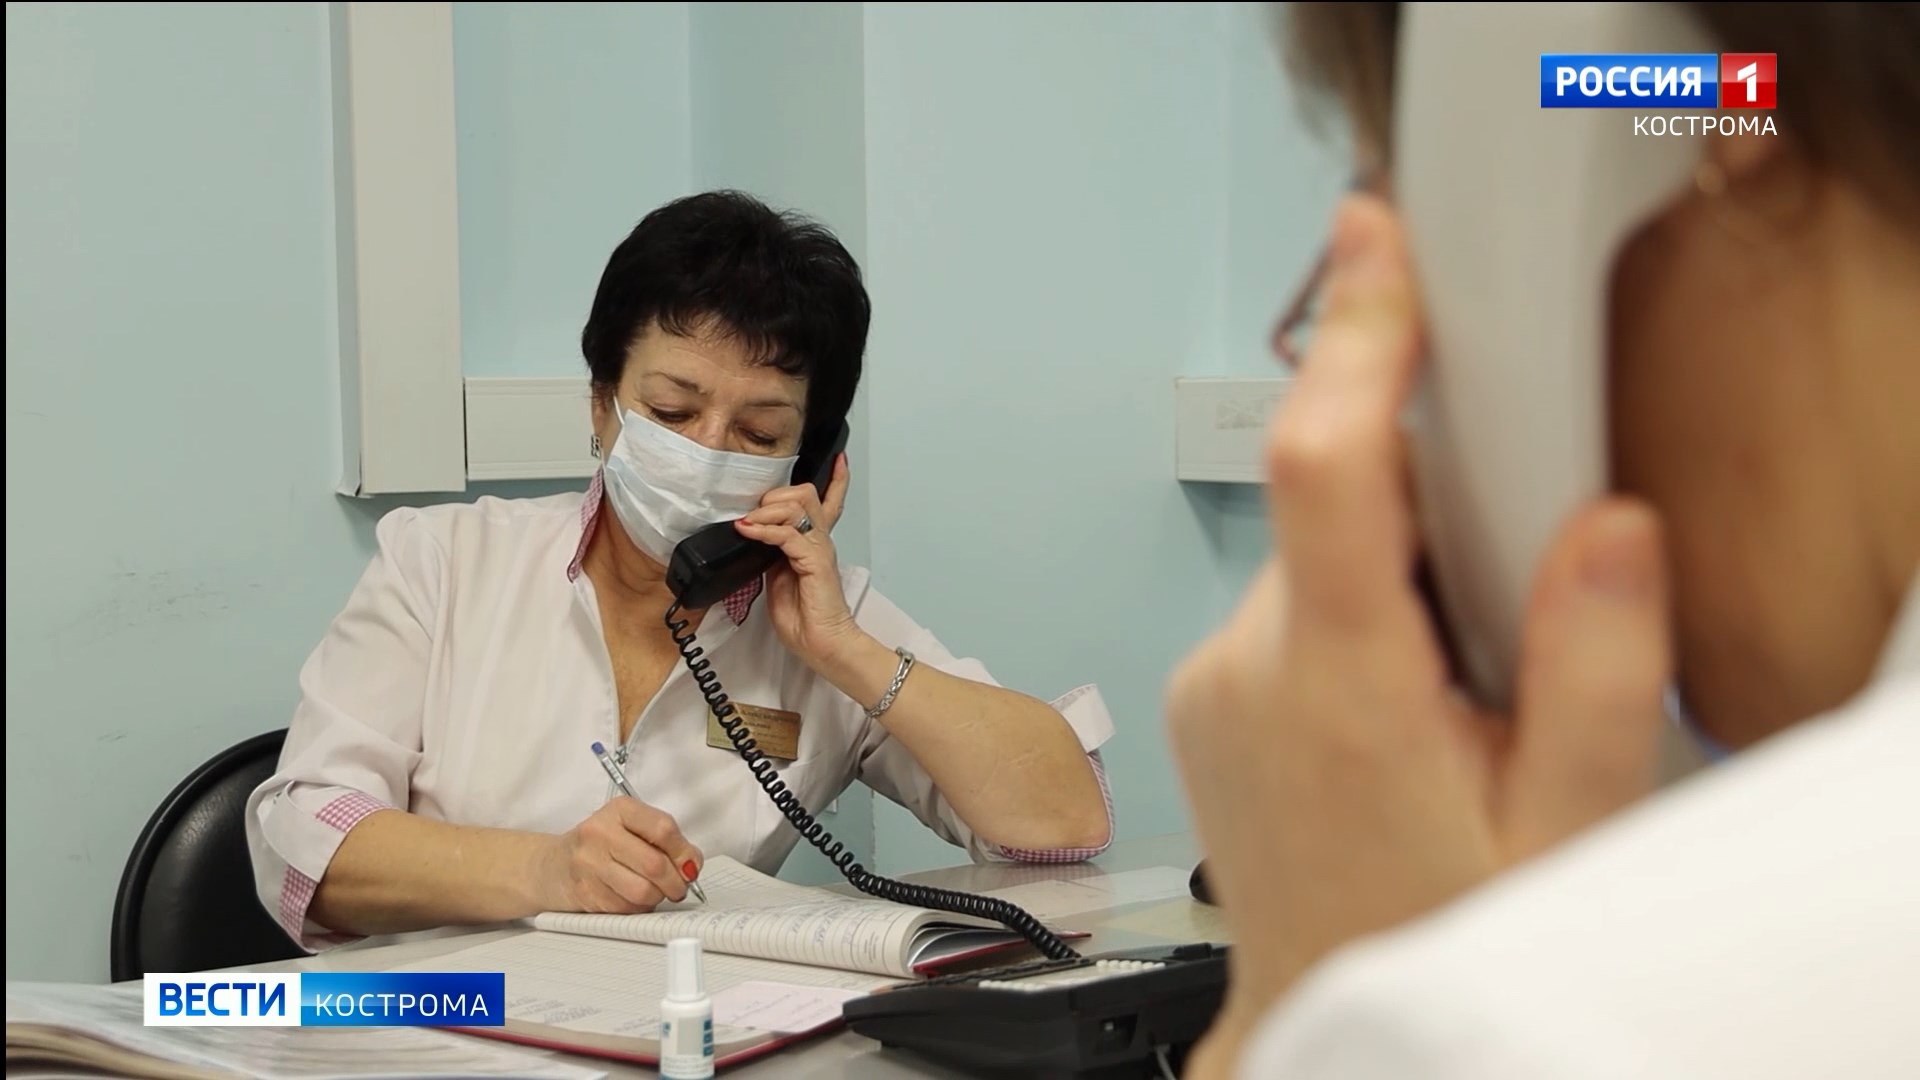 «Микс» из трёх вирусов заставляет костромских врачей работать на износ